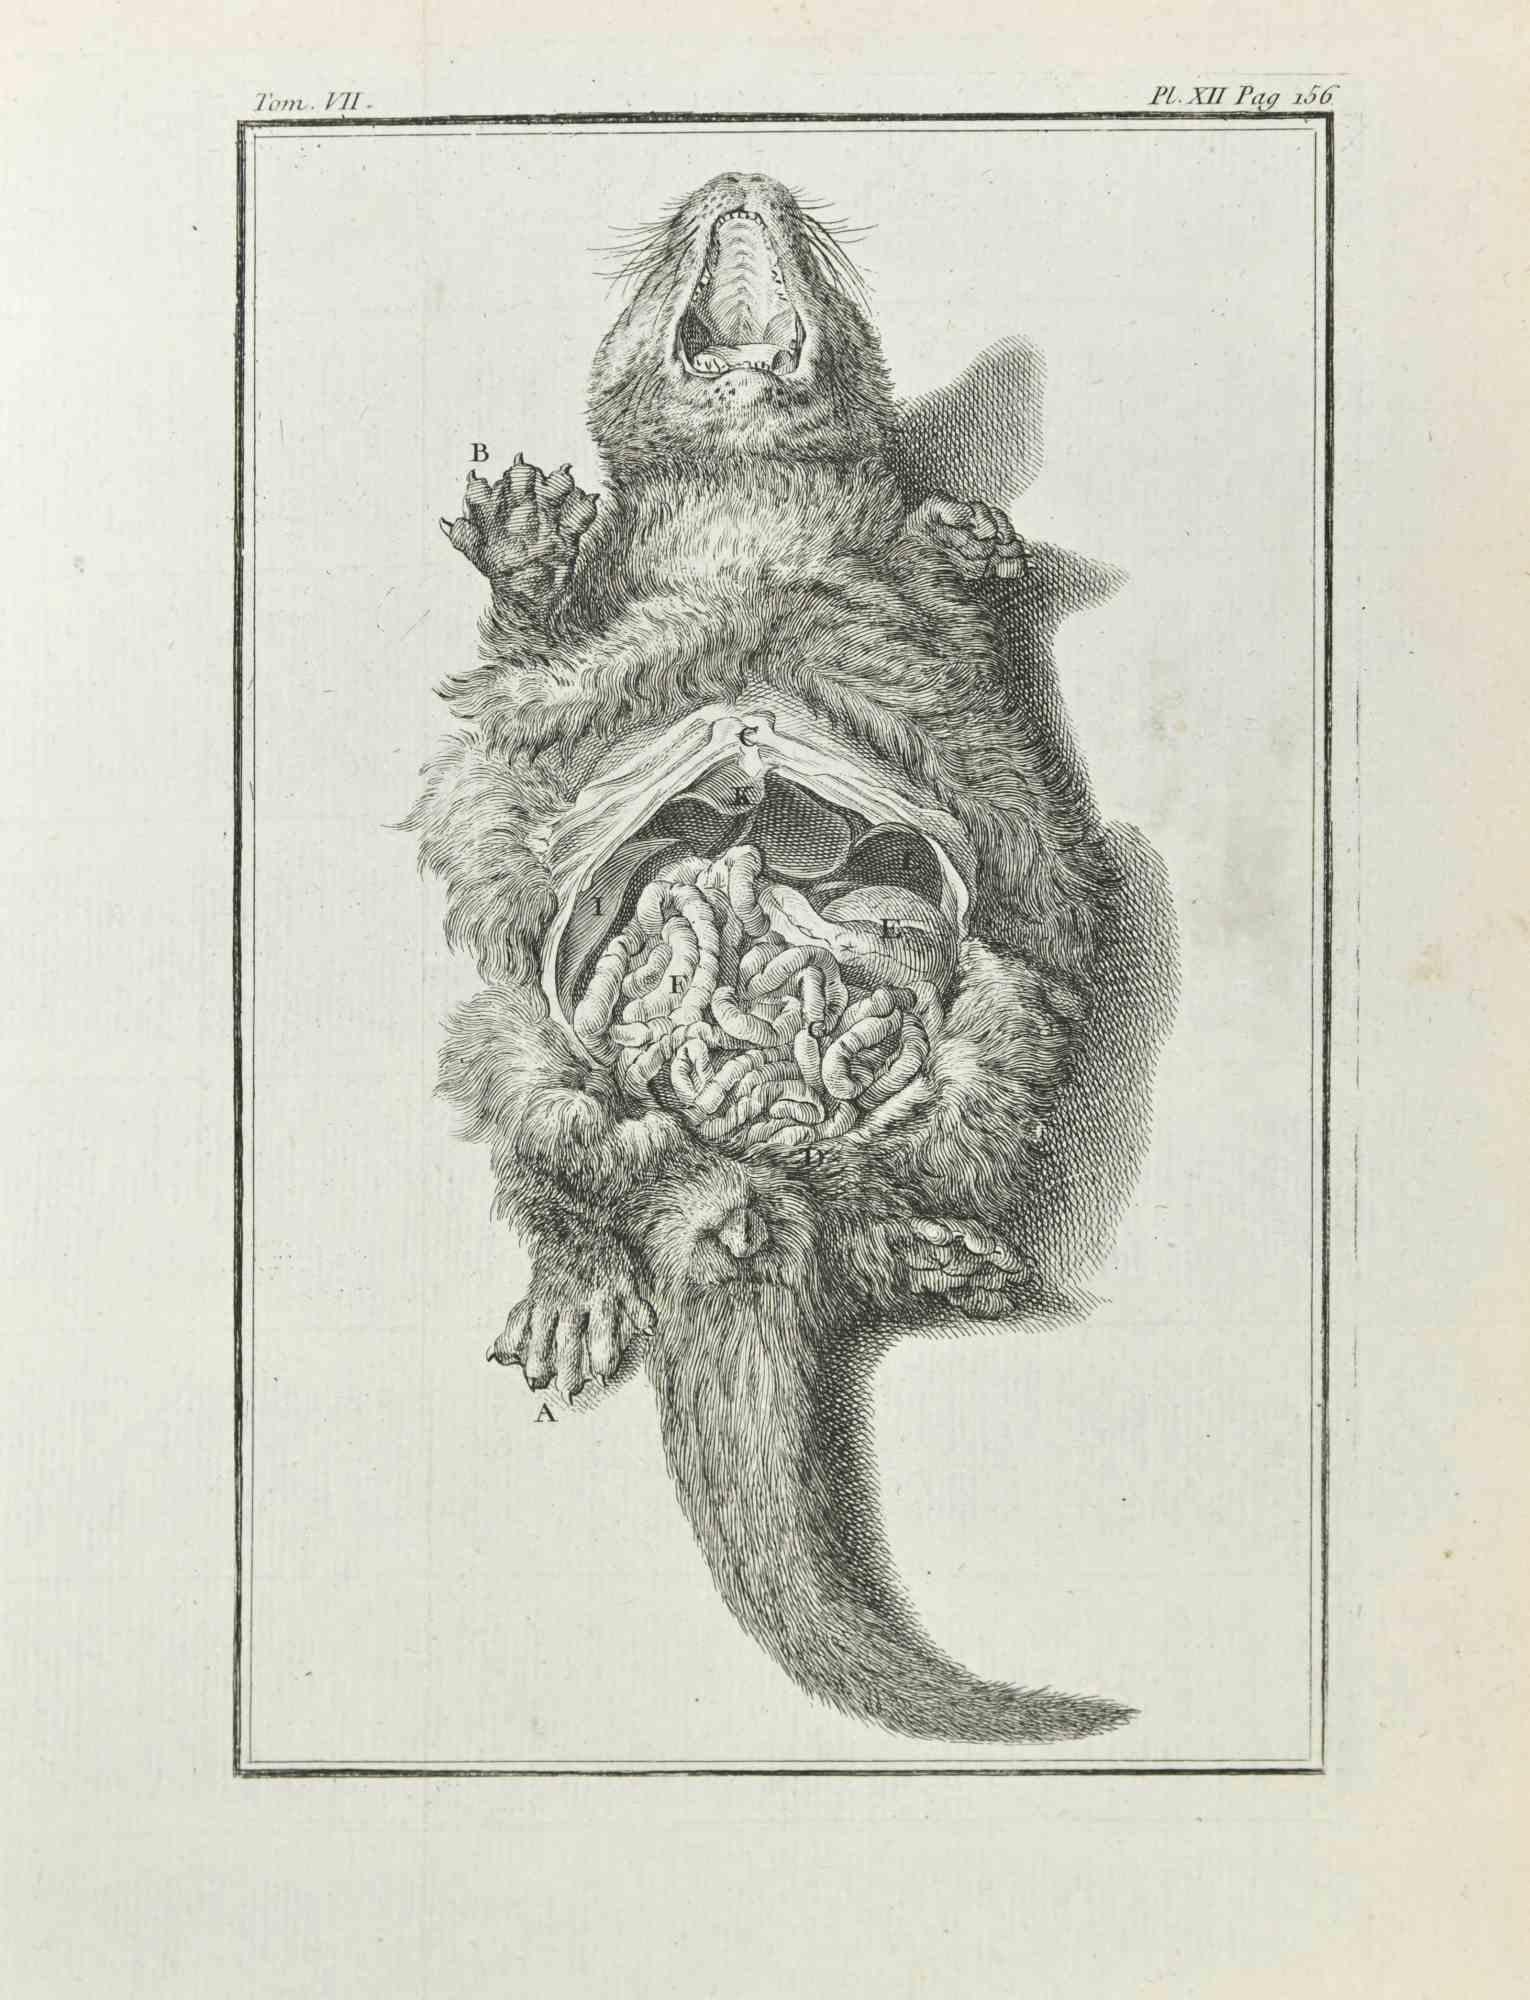 Jean Charles Baquoy Animal Print – Anatomie von Tieren – Radierung – 1771